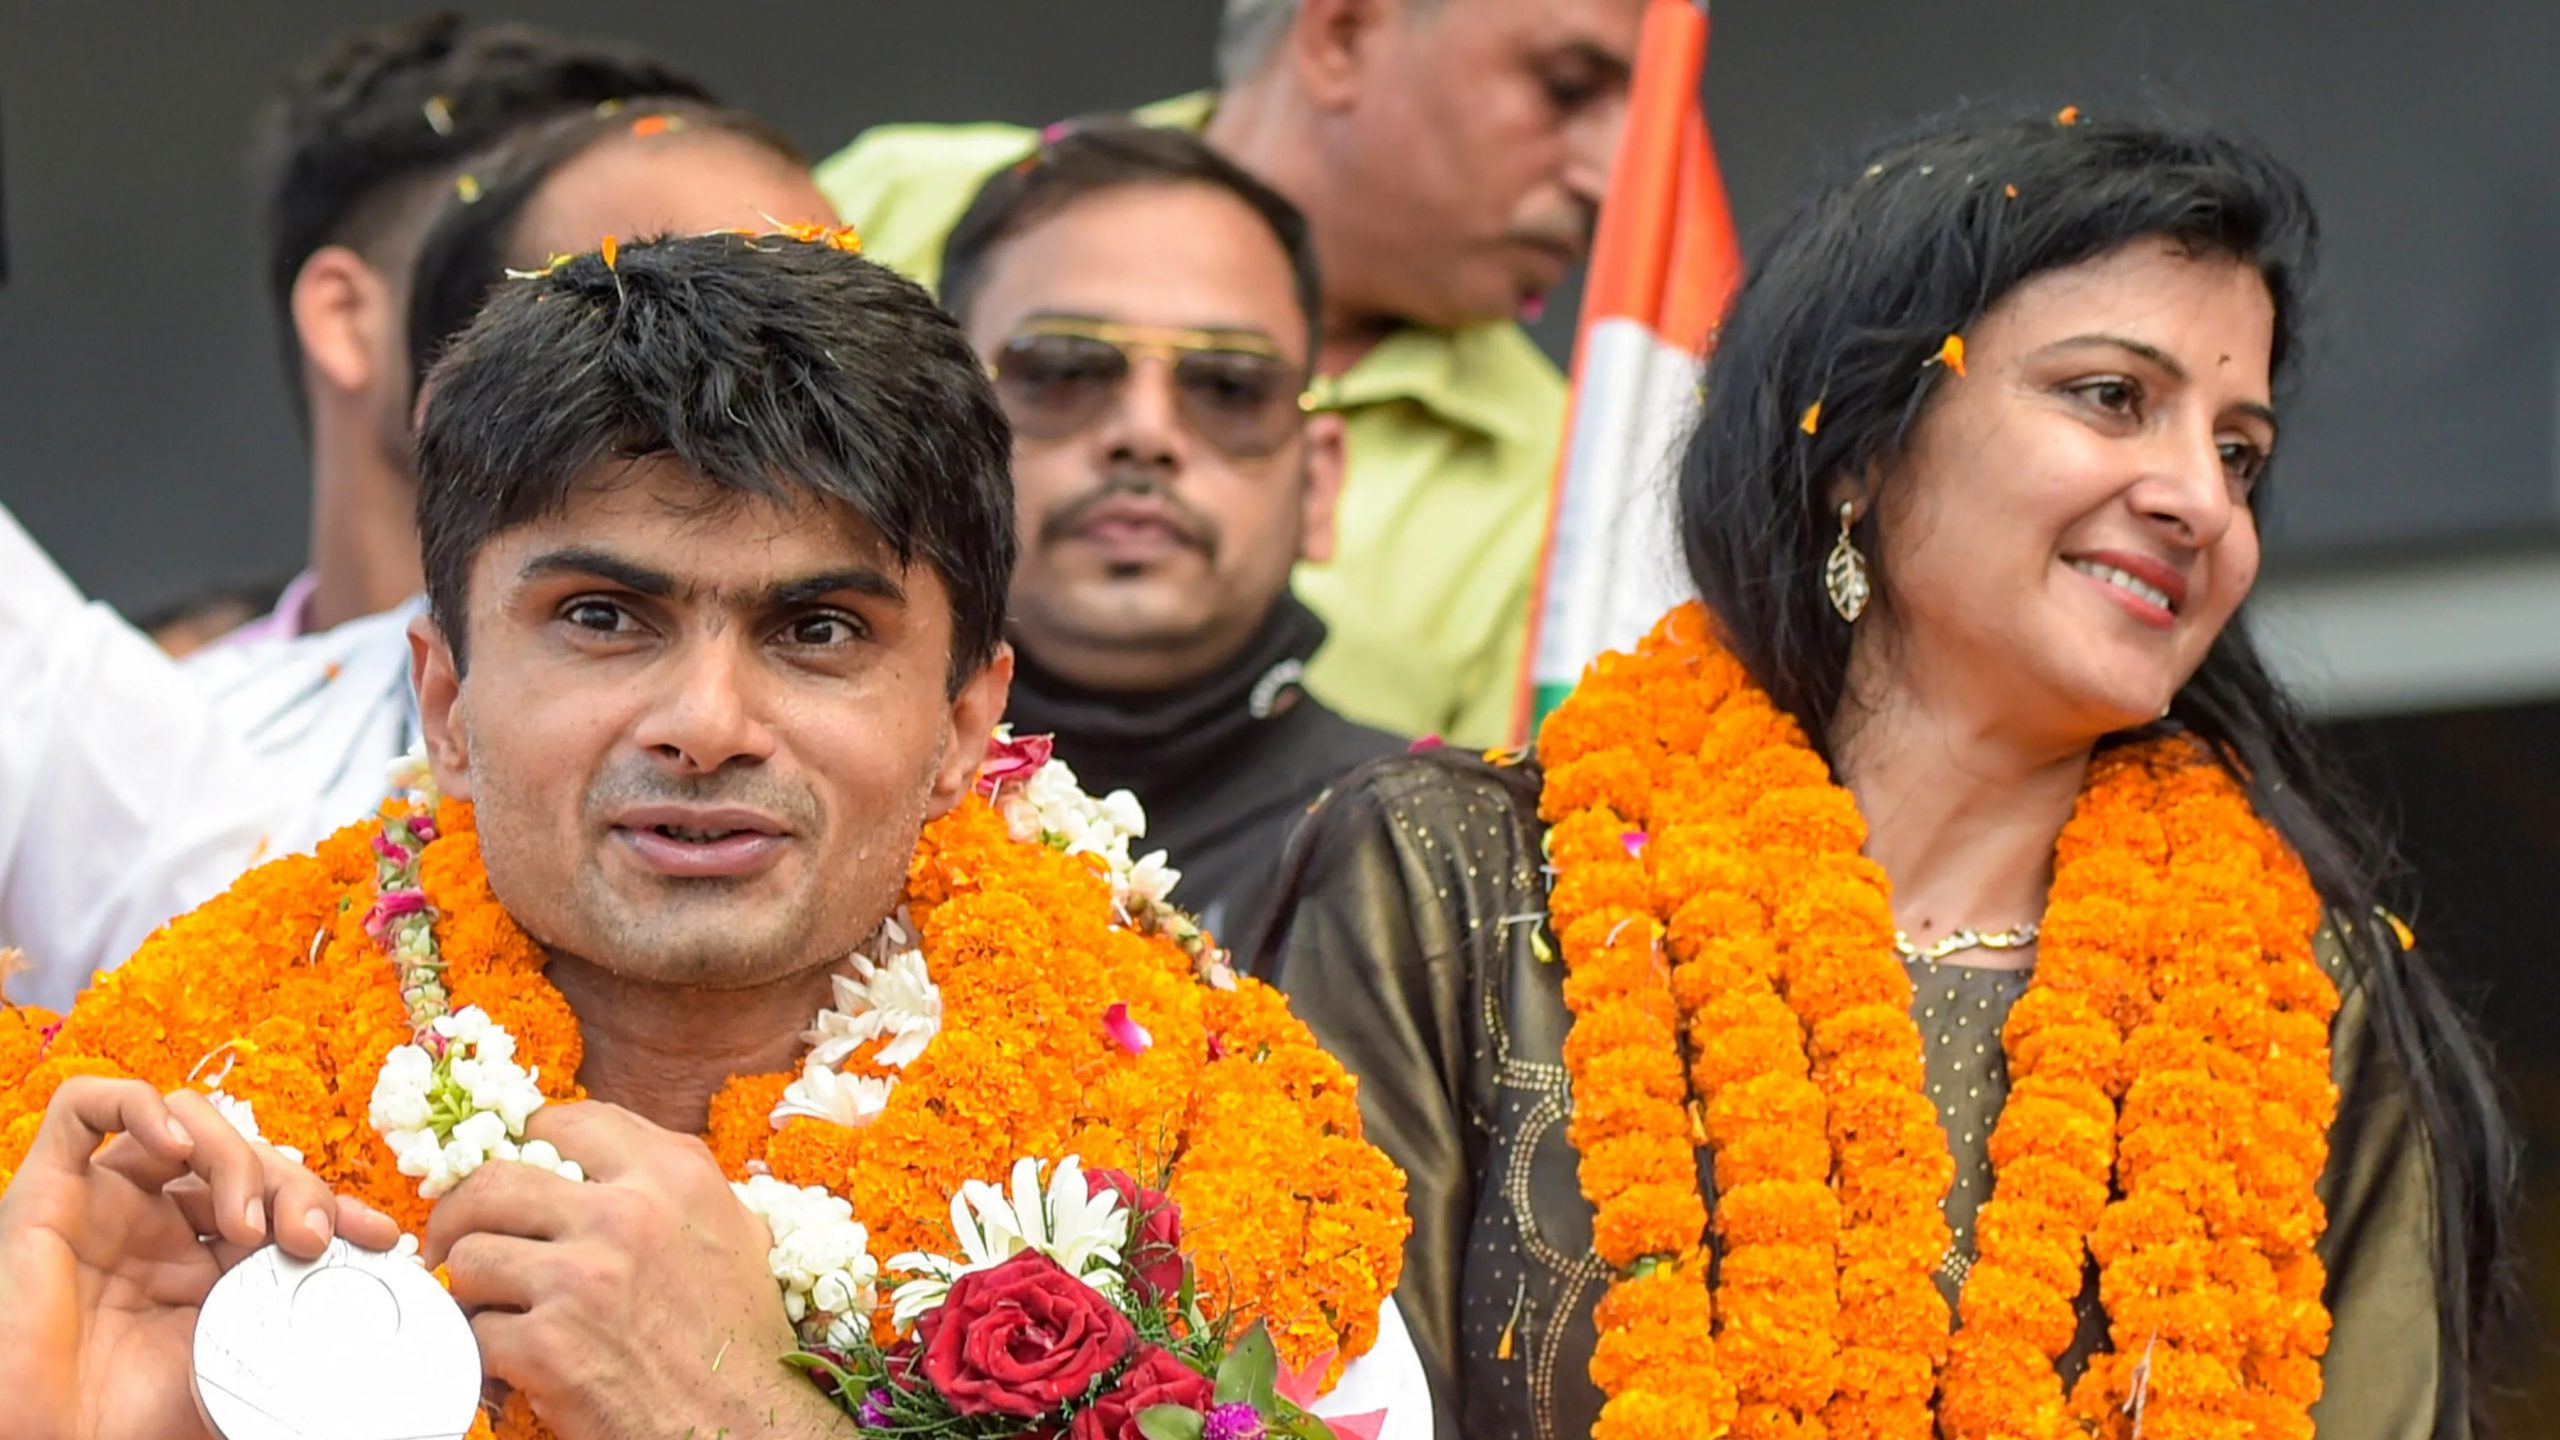 पैरालंपिक मेडलिस्ट और डीएम सुहास यतिराज की पत्नी रह चुकी हैं मिसेज इंडिया, किए हैं बड़े-बड़े कारनामे